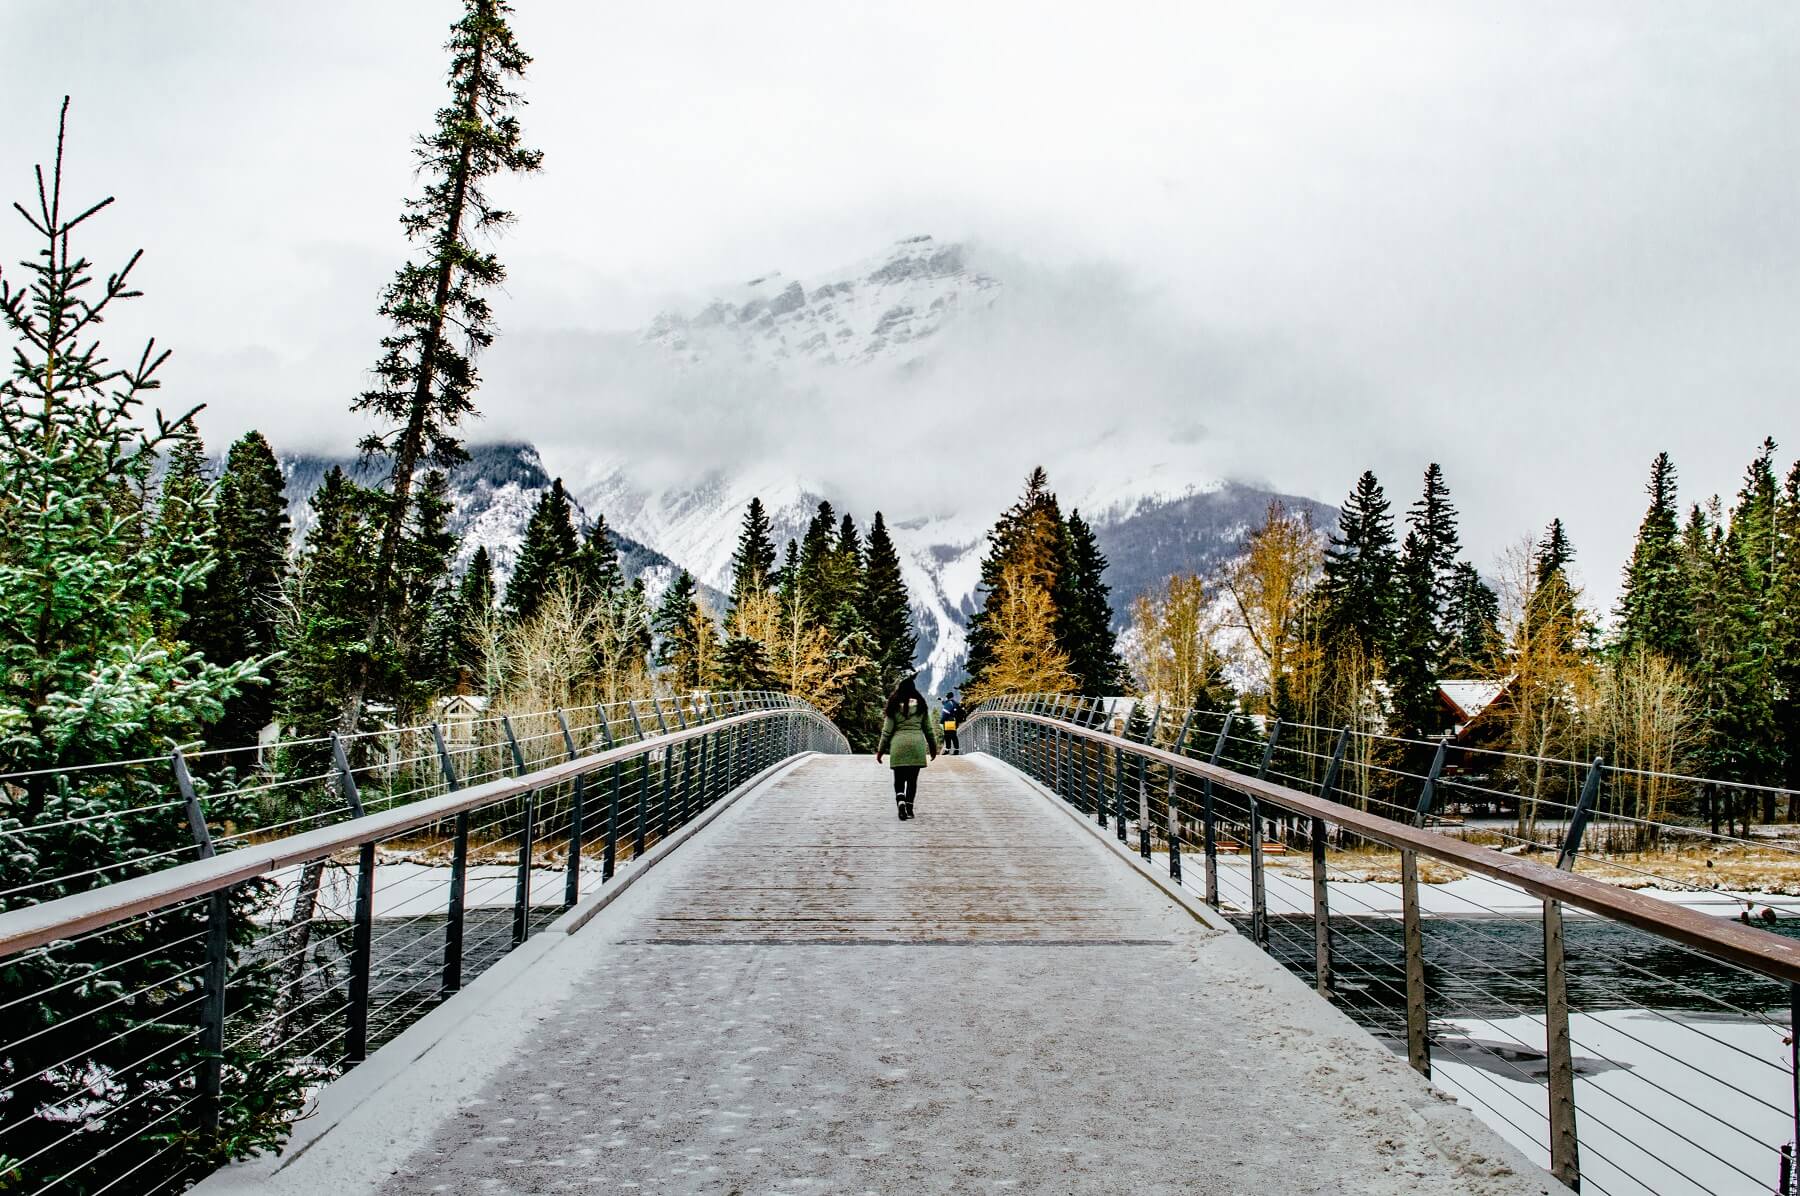 Walking across the bridge in Banff